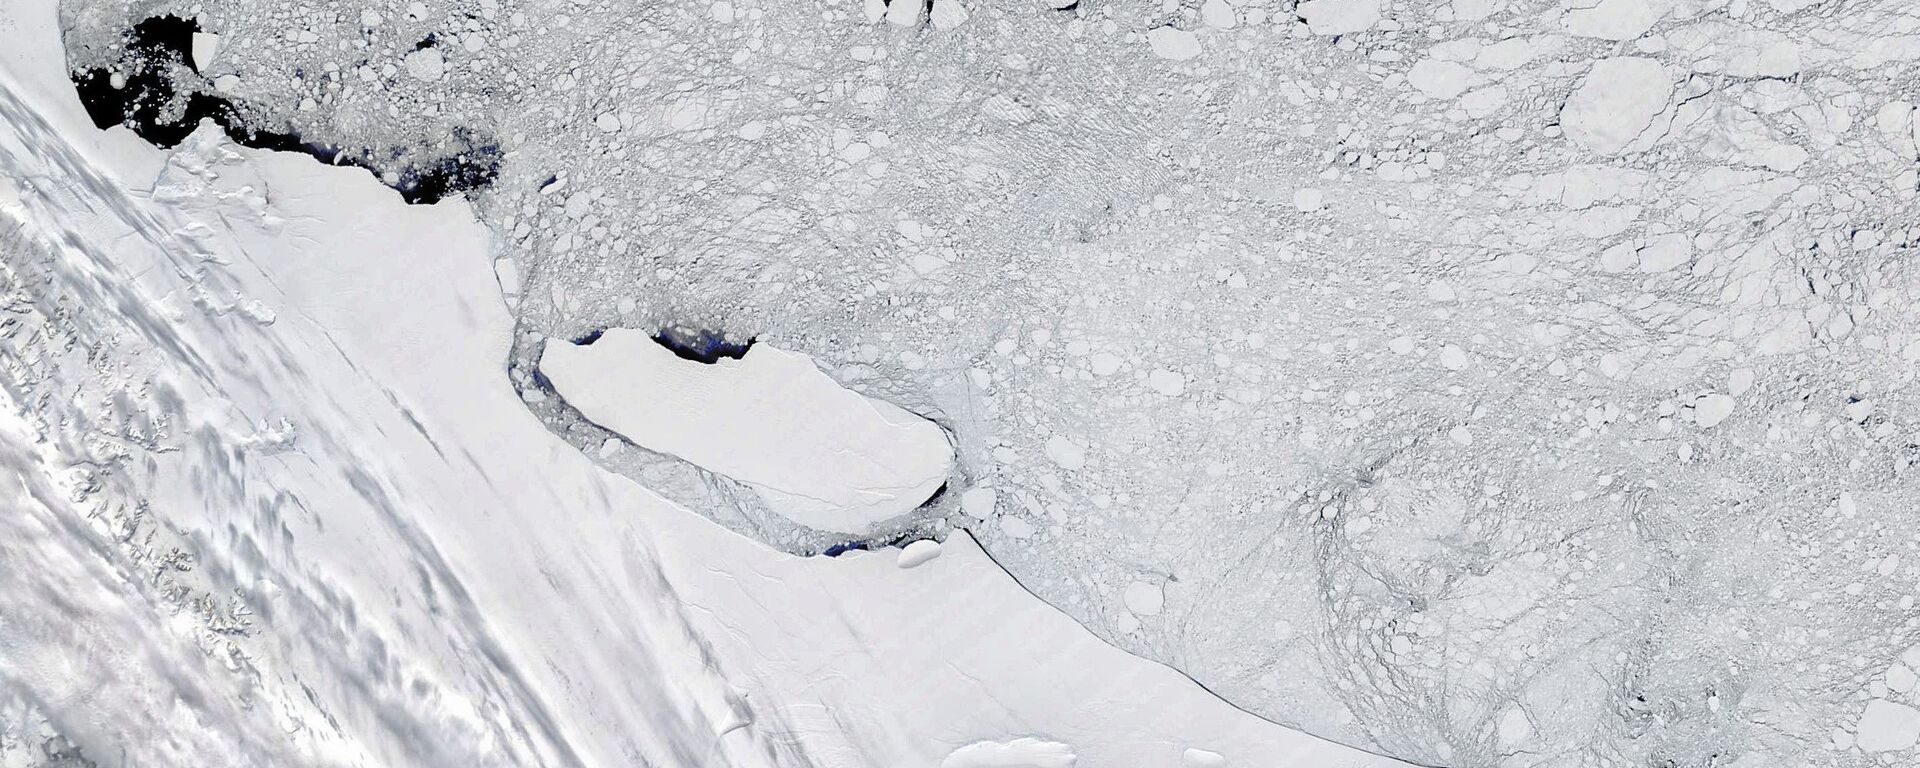  جبل الجليد A68، القارة القطبية الجنوبية، عام 2017 - سبوتنيك عربي, 1920, 17.06.2022